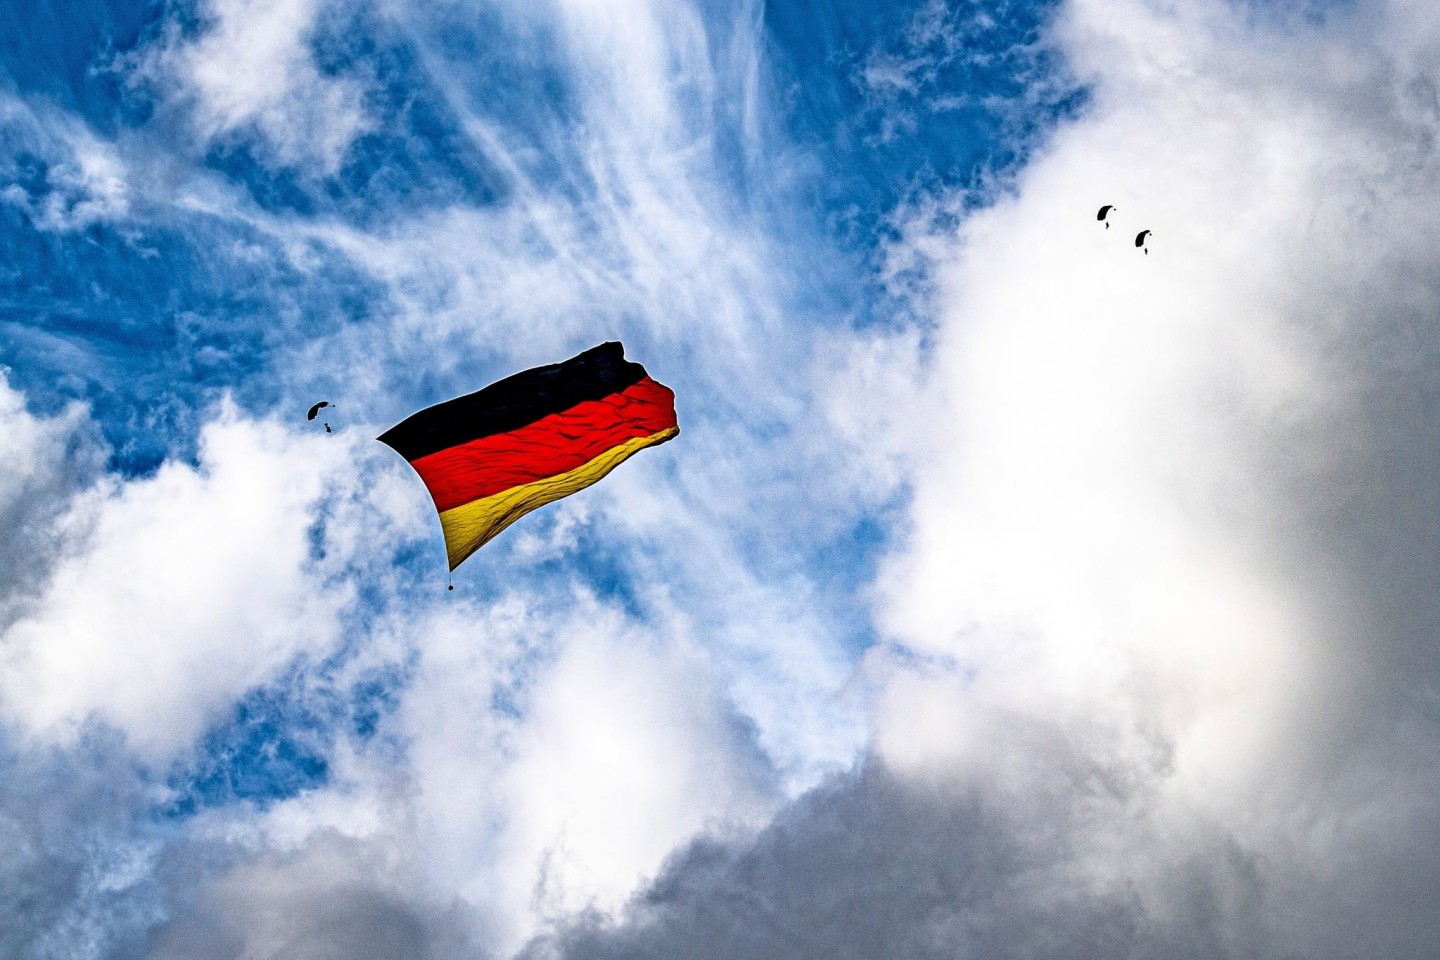 Über dem Flughafen Paderborn-Lippstadt hissen sieben Fallschirmspringer eine Flagge, die so groß ist wie niemals zuvor bei einem Sprung.